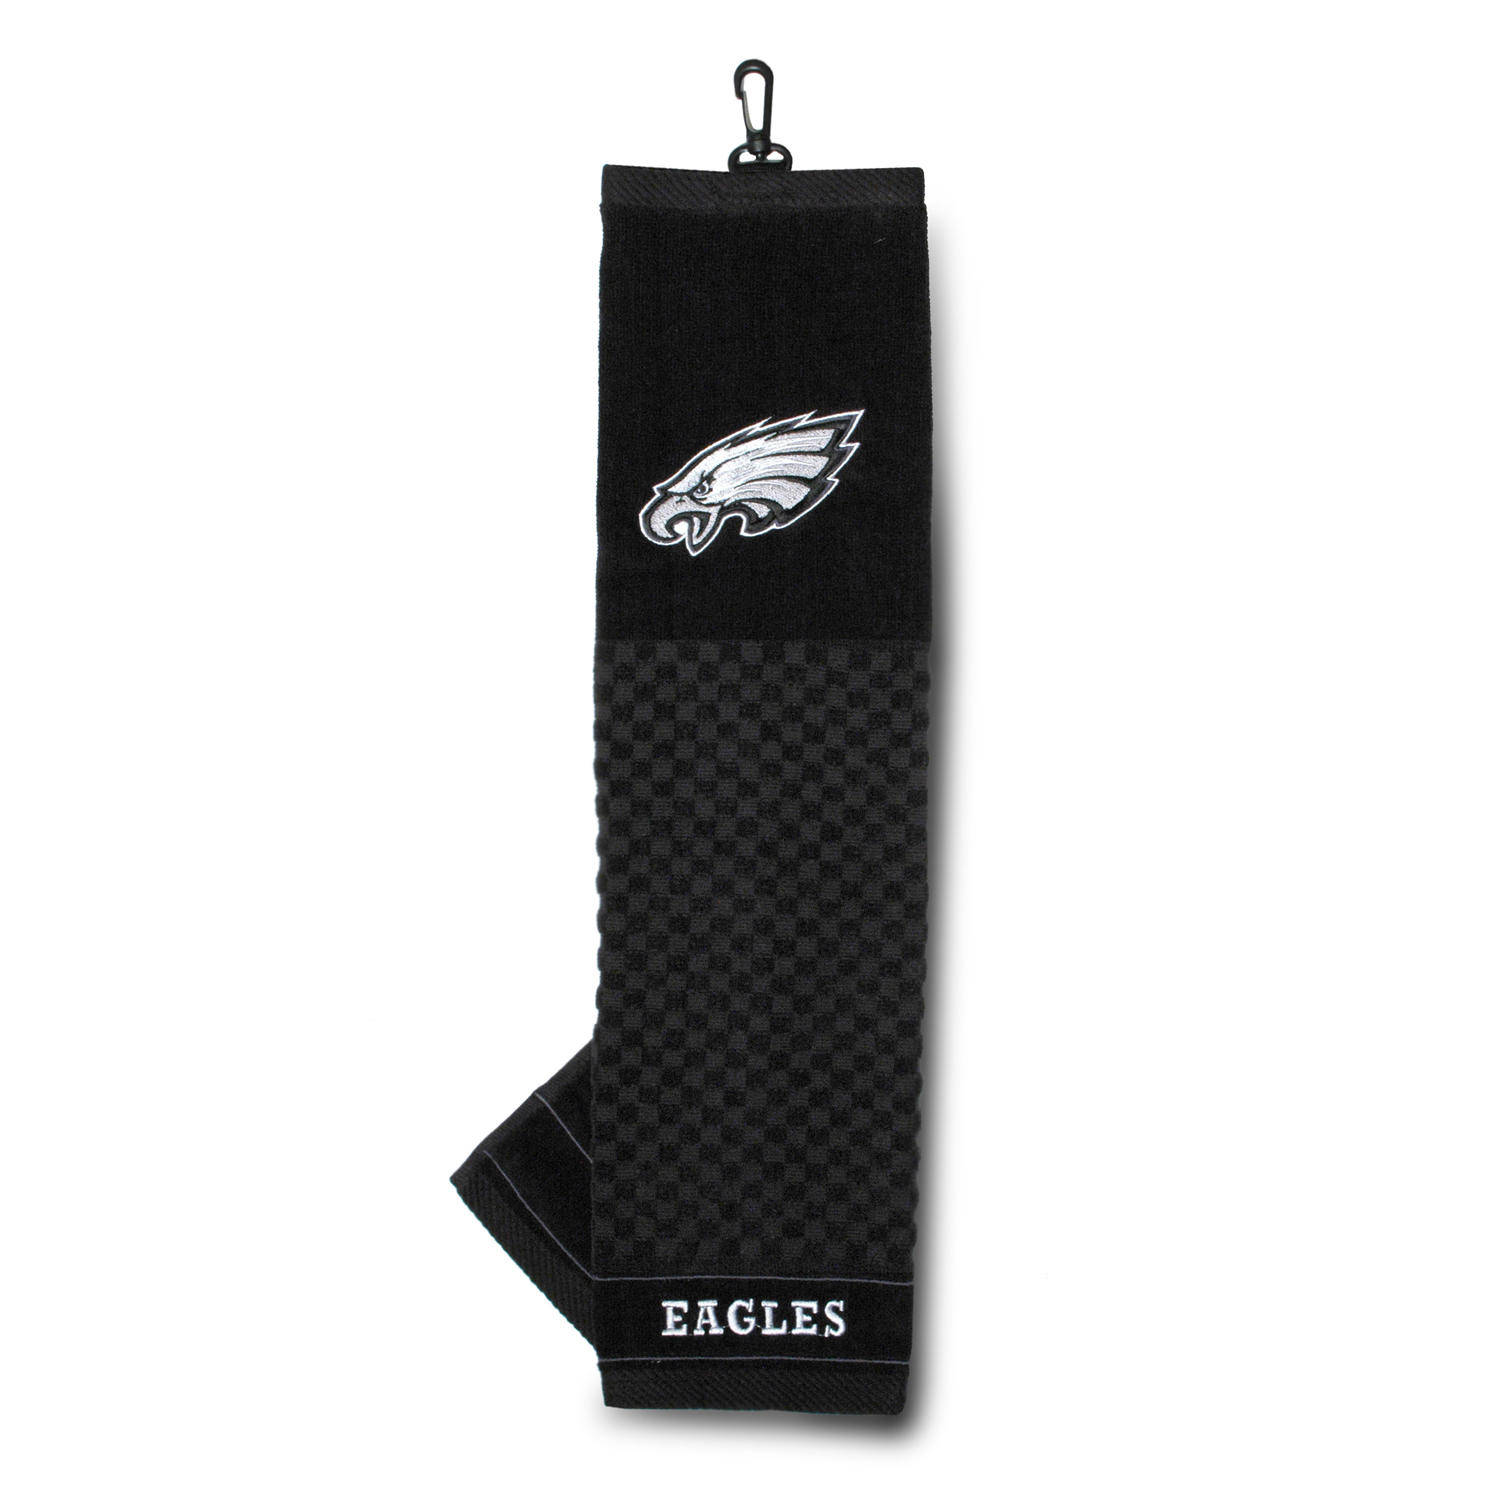 Philadelphia Eagles Embroidered Towel